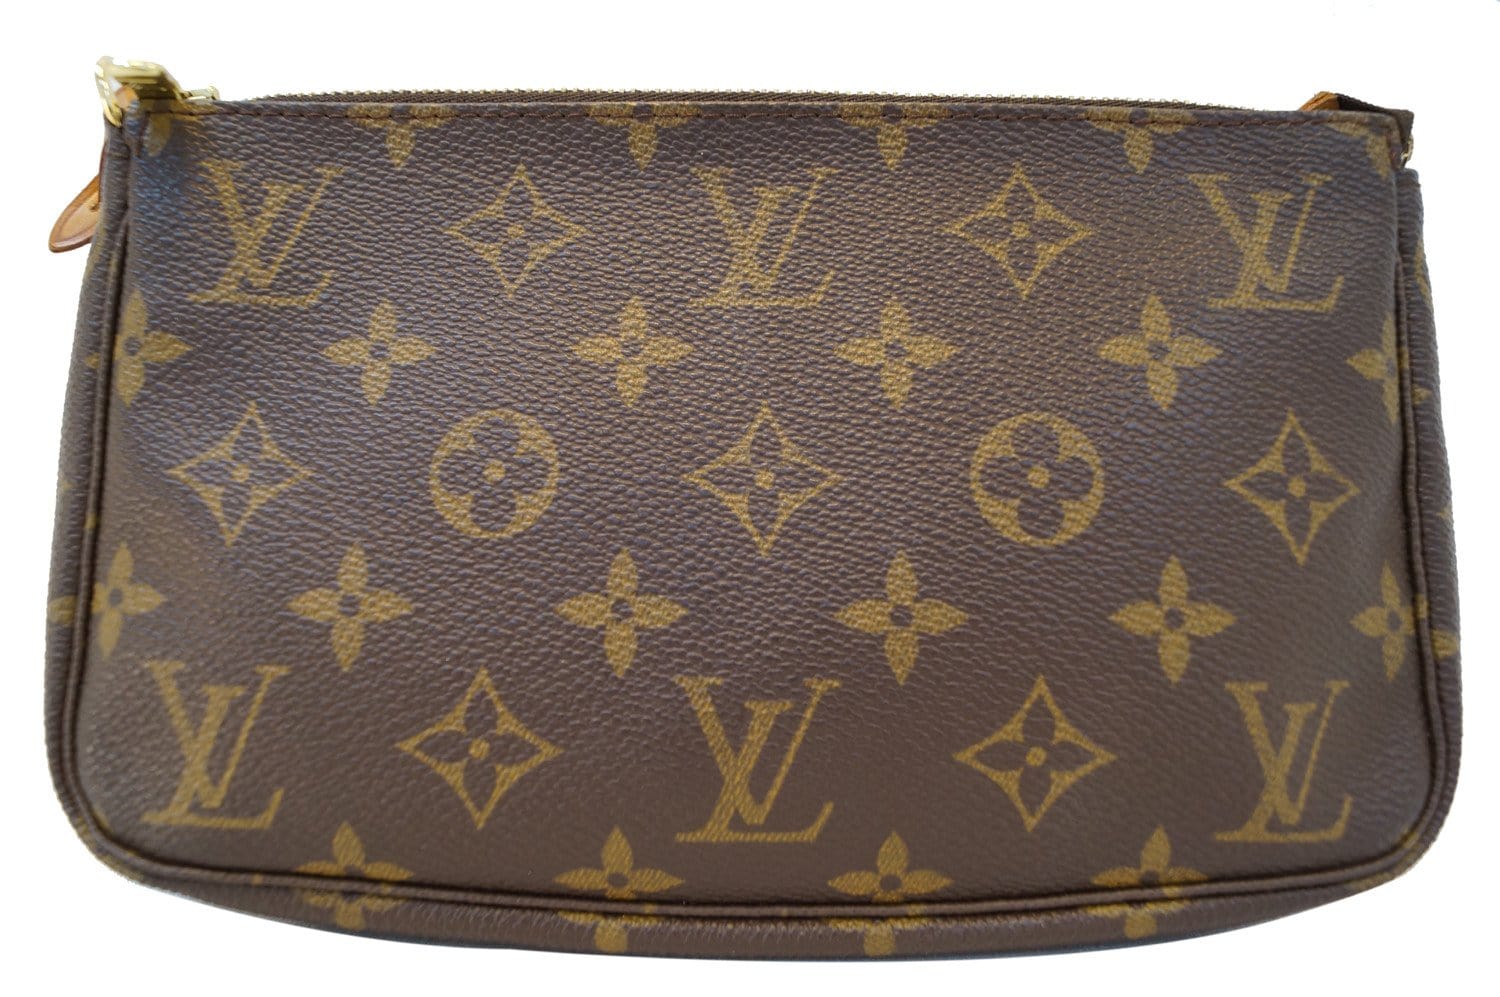 Louis Vuitton - Pochette Accessoires Pouch Bag - Catawiki